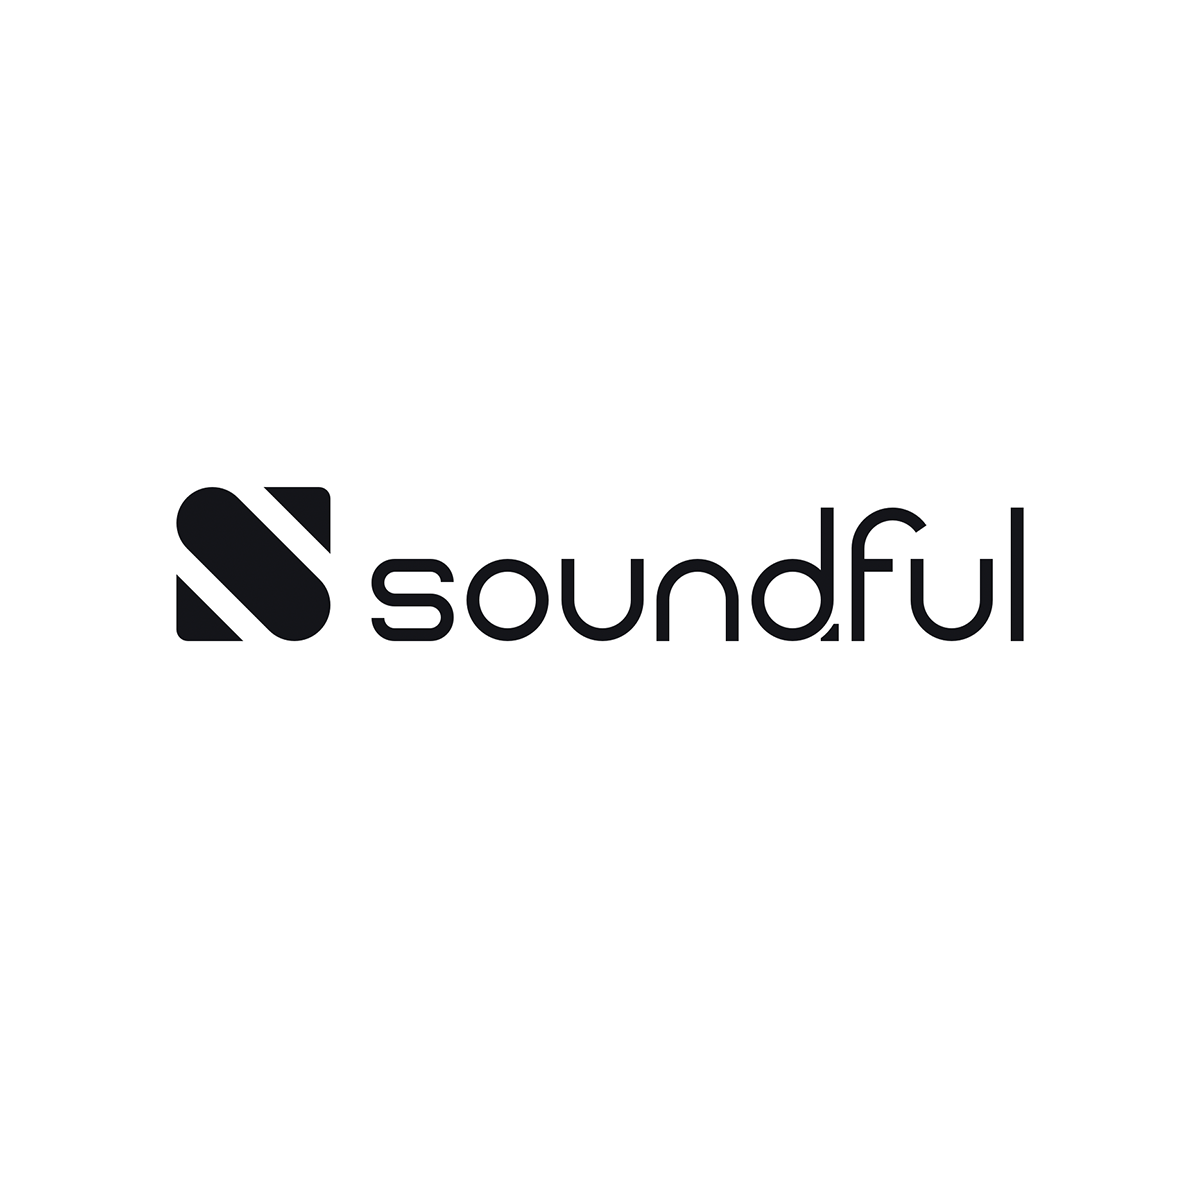 A agência smartboost, de United States, ajudou Soundful a expandir seus negócios usando SEO e marketing digital